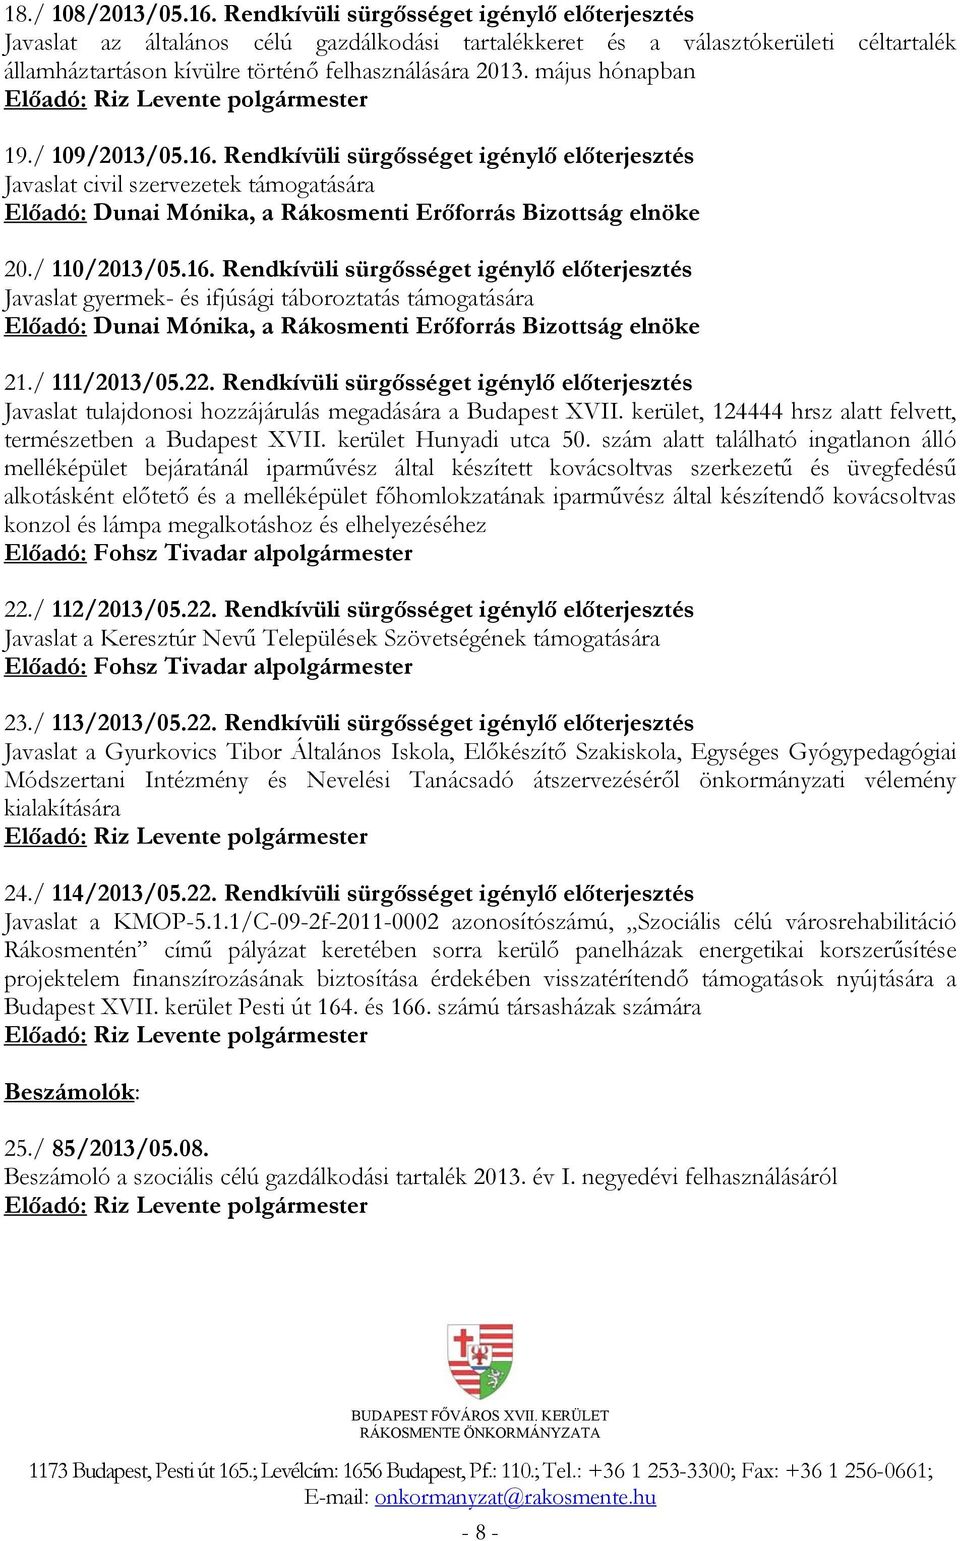 május hónapban 19./ 109/2013/05.16. Rendkívüli sürgősséget igénylő előterjesztés Javaslat civil szervezetek támogatására Előadó: Dunai Mónika, a Rákosmenti Erőforrás Bizottság elnöke 20./ 110/2013/05.